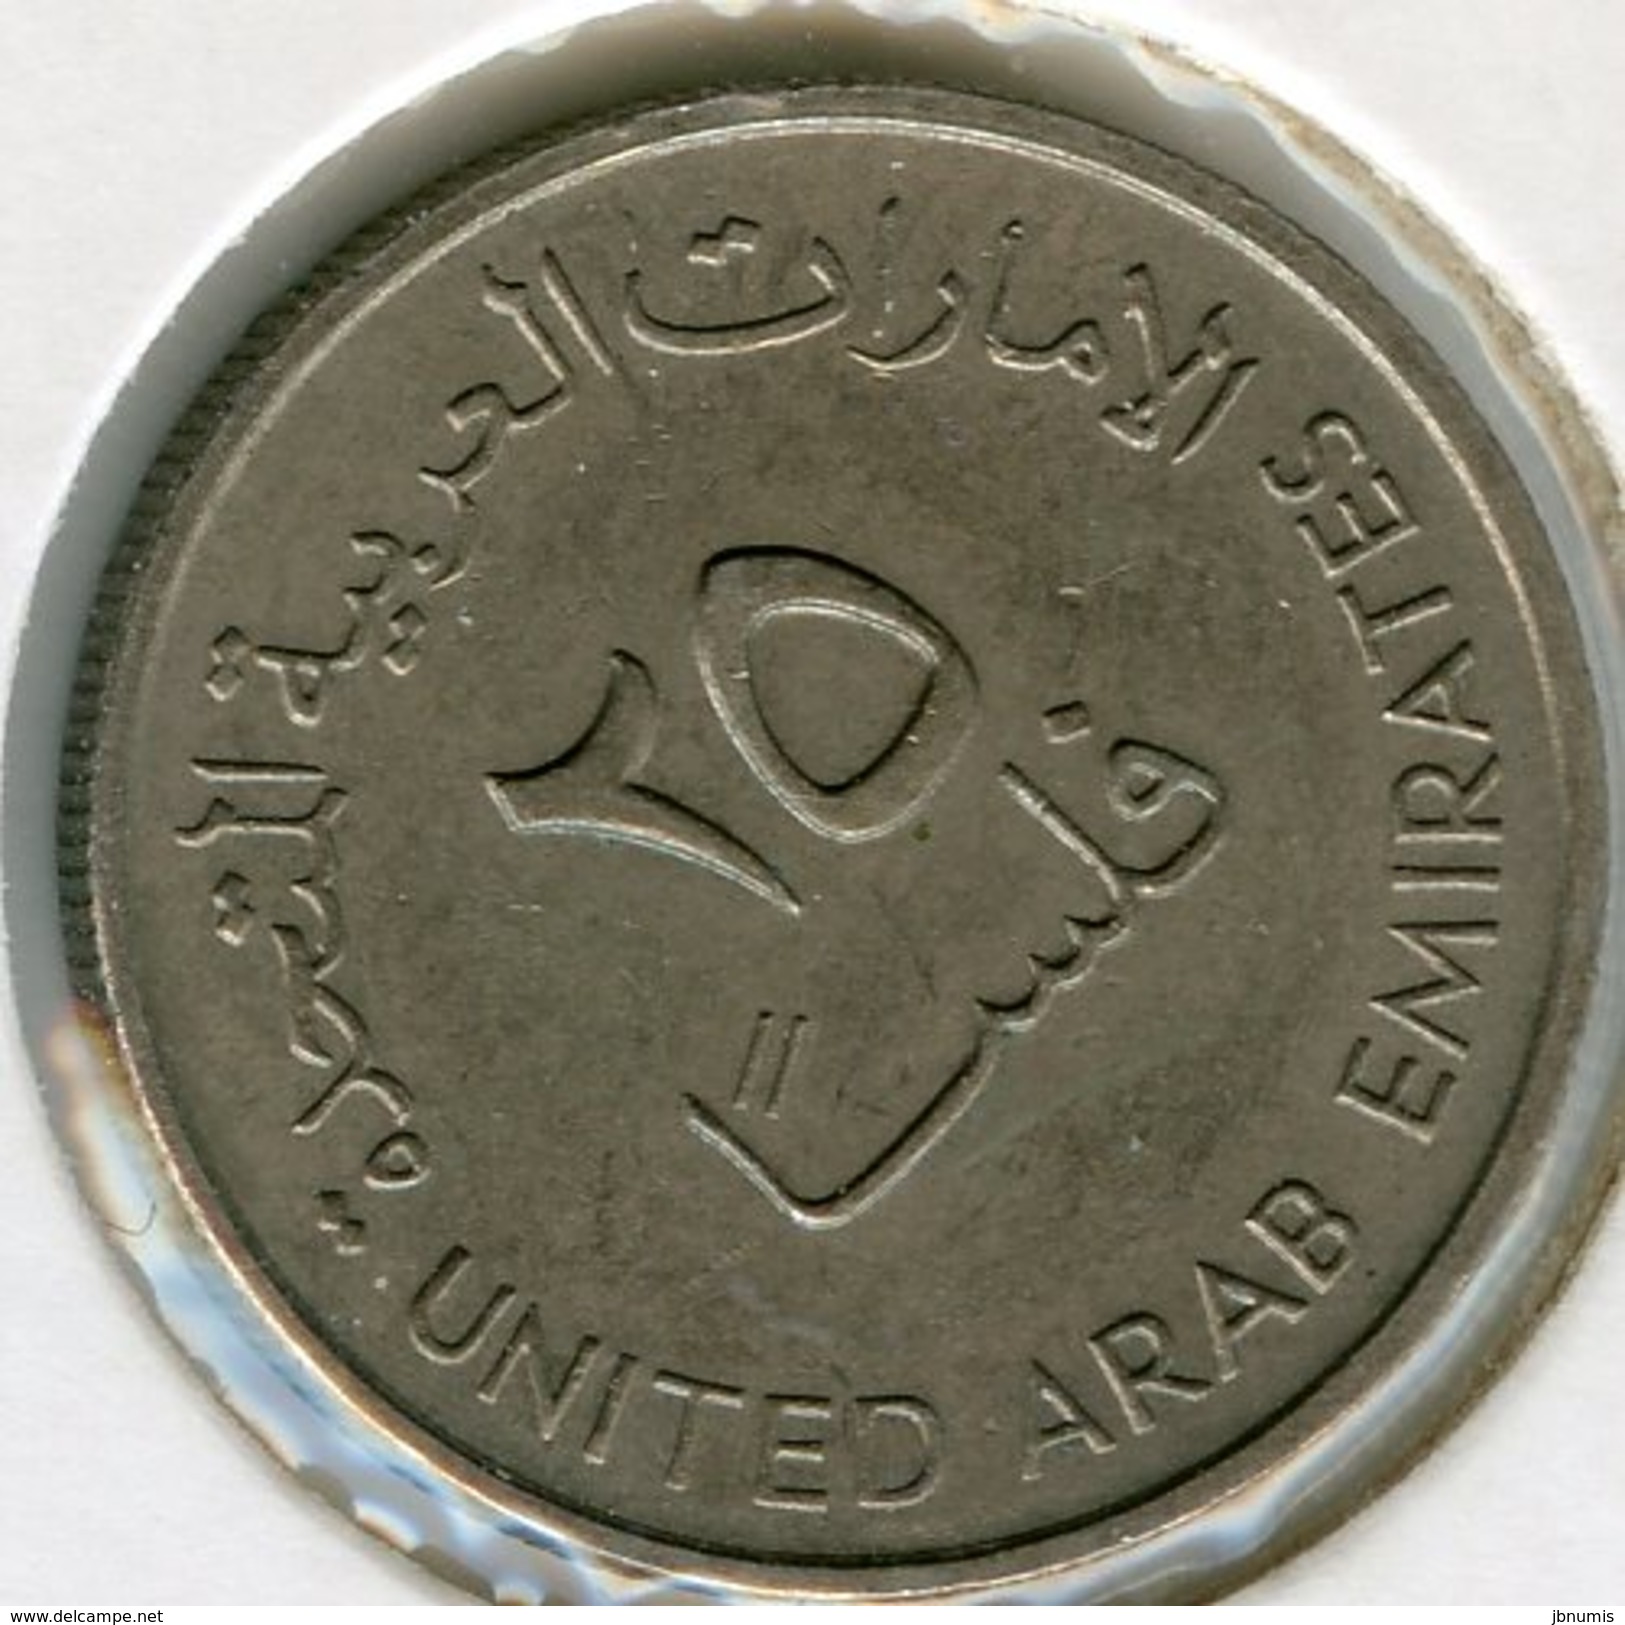 Emirats Arabes Unis United Arab Emirates 25 Fils 1402 - 1982 KM 4 - Emirats Arabes Unis